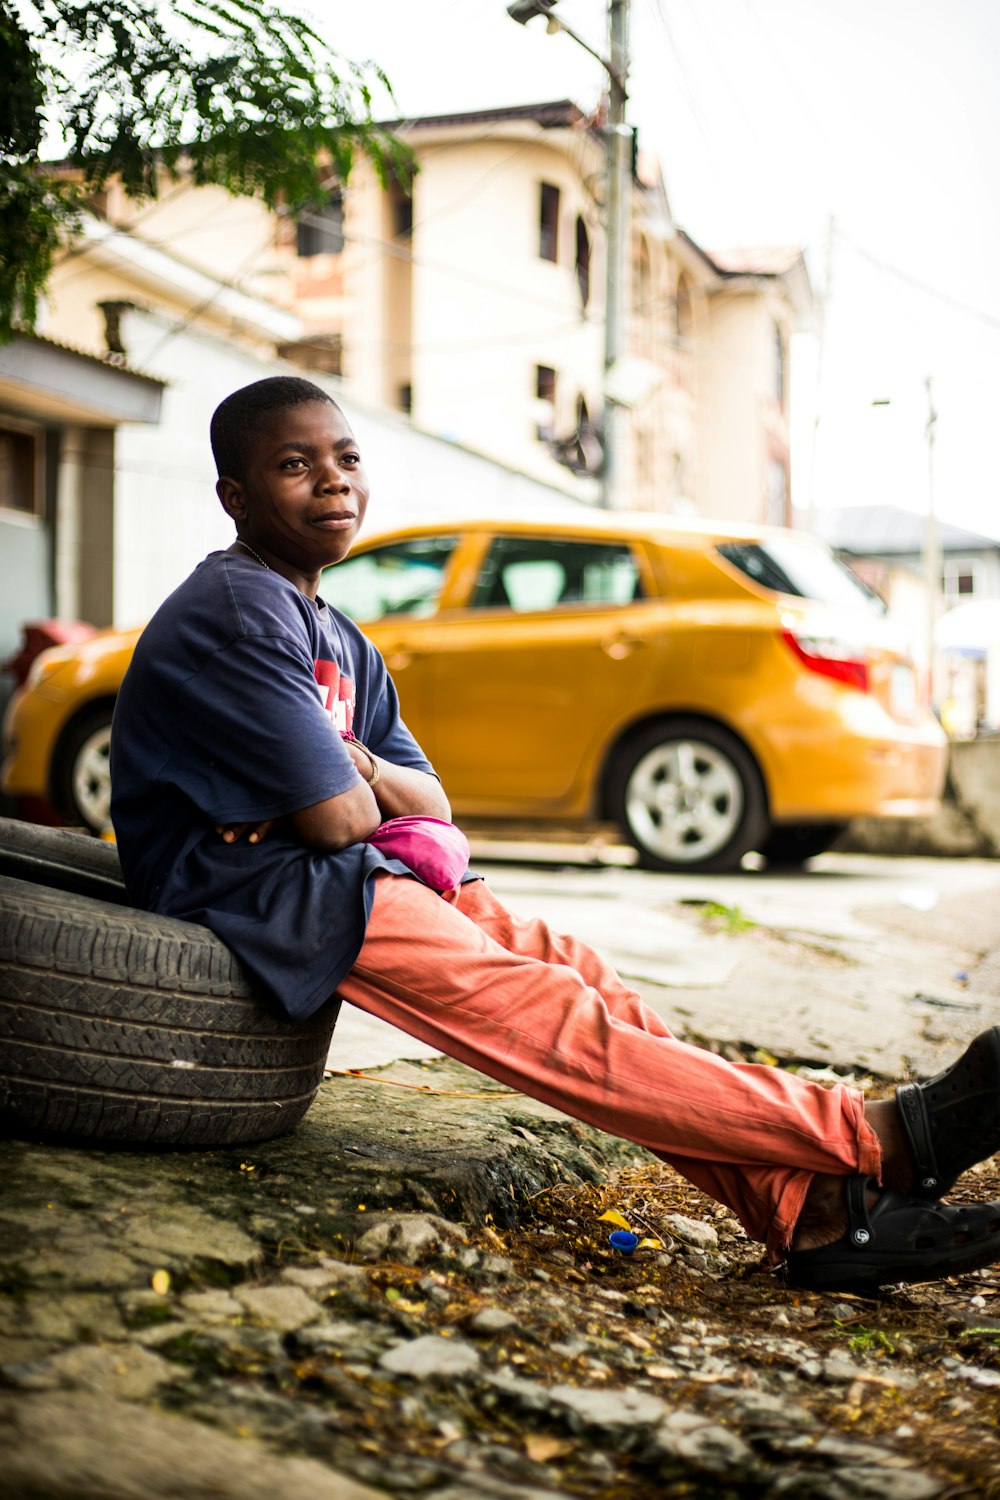 a boy sitting on a tire